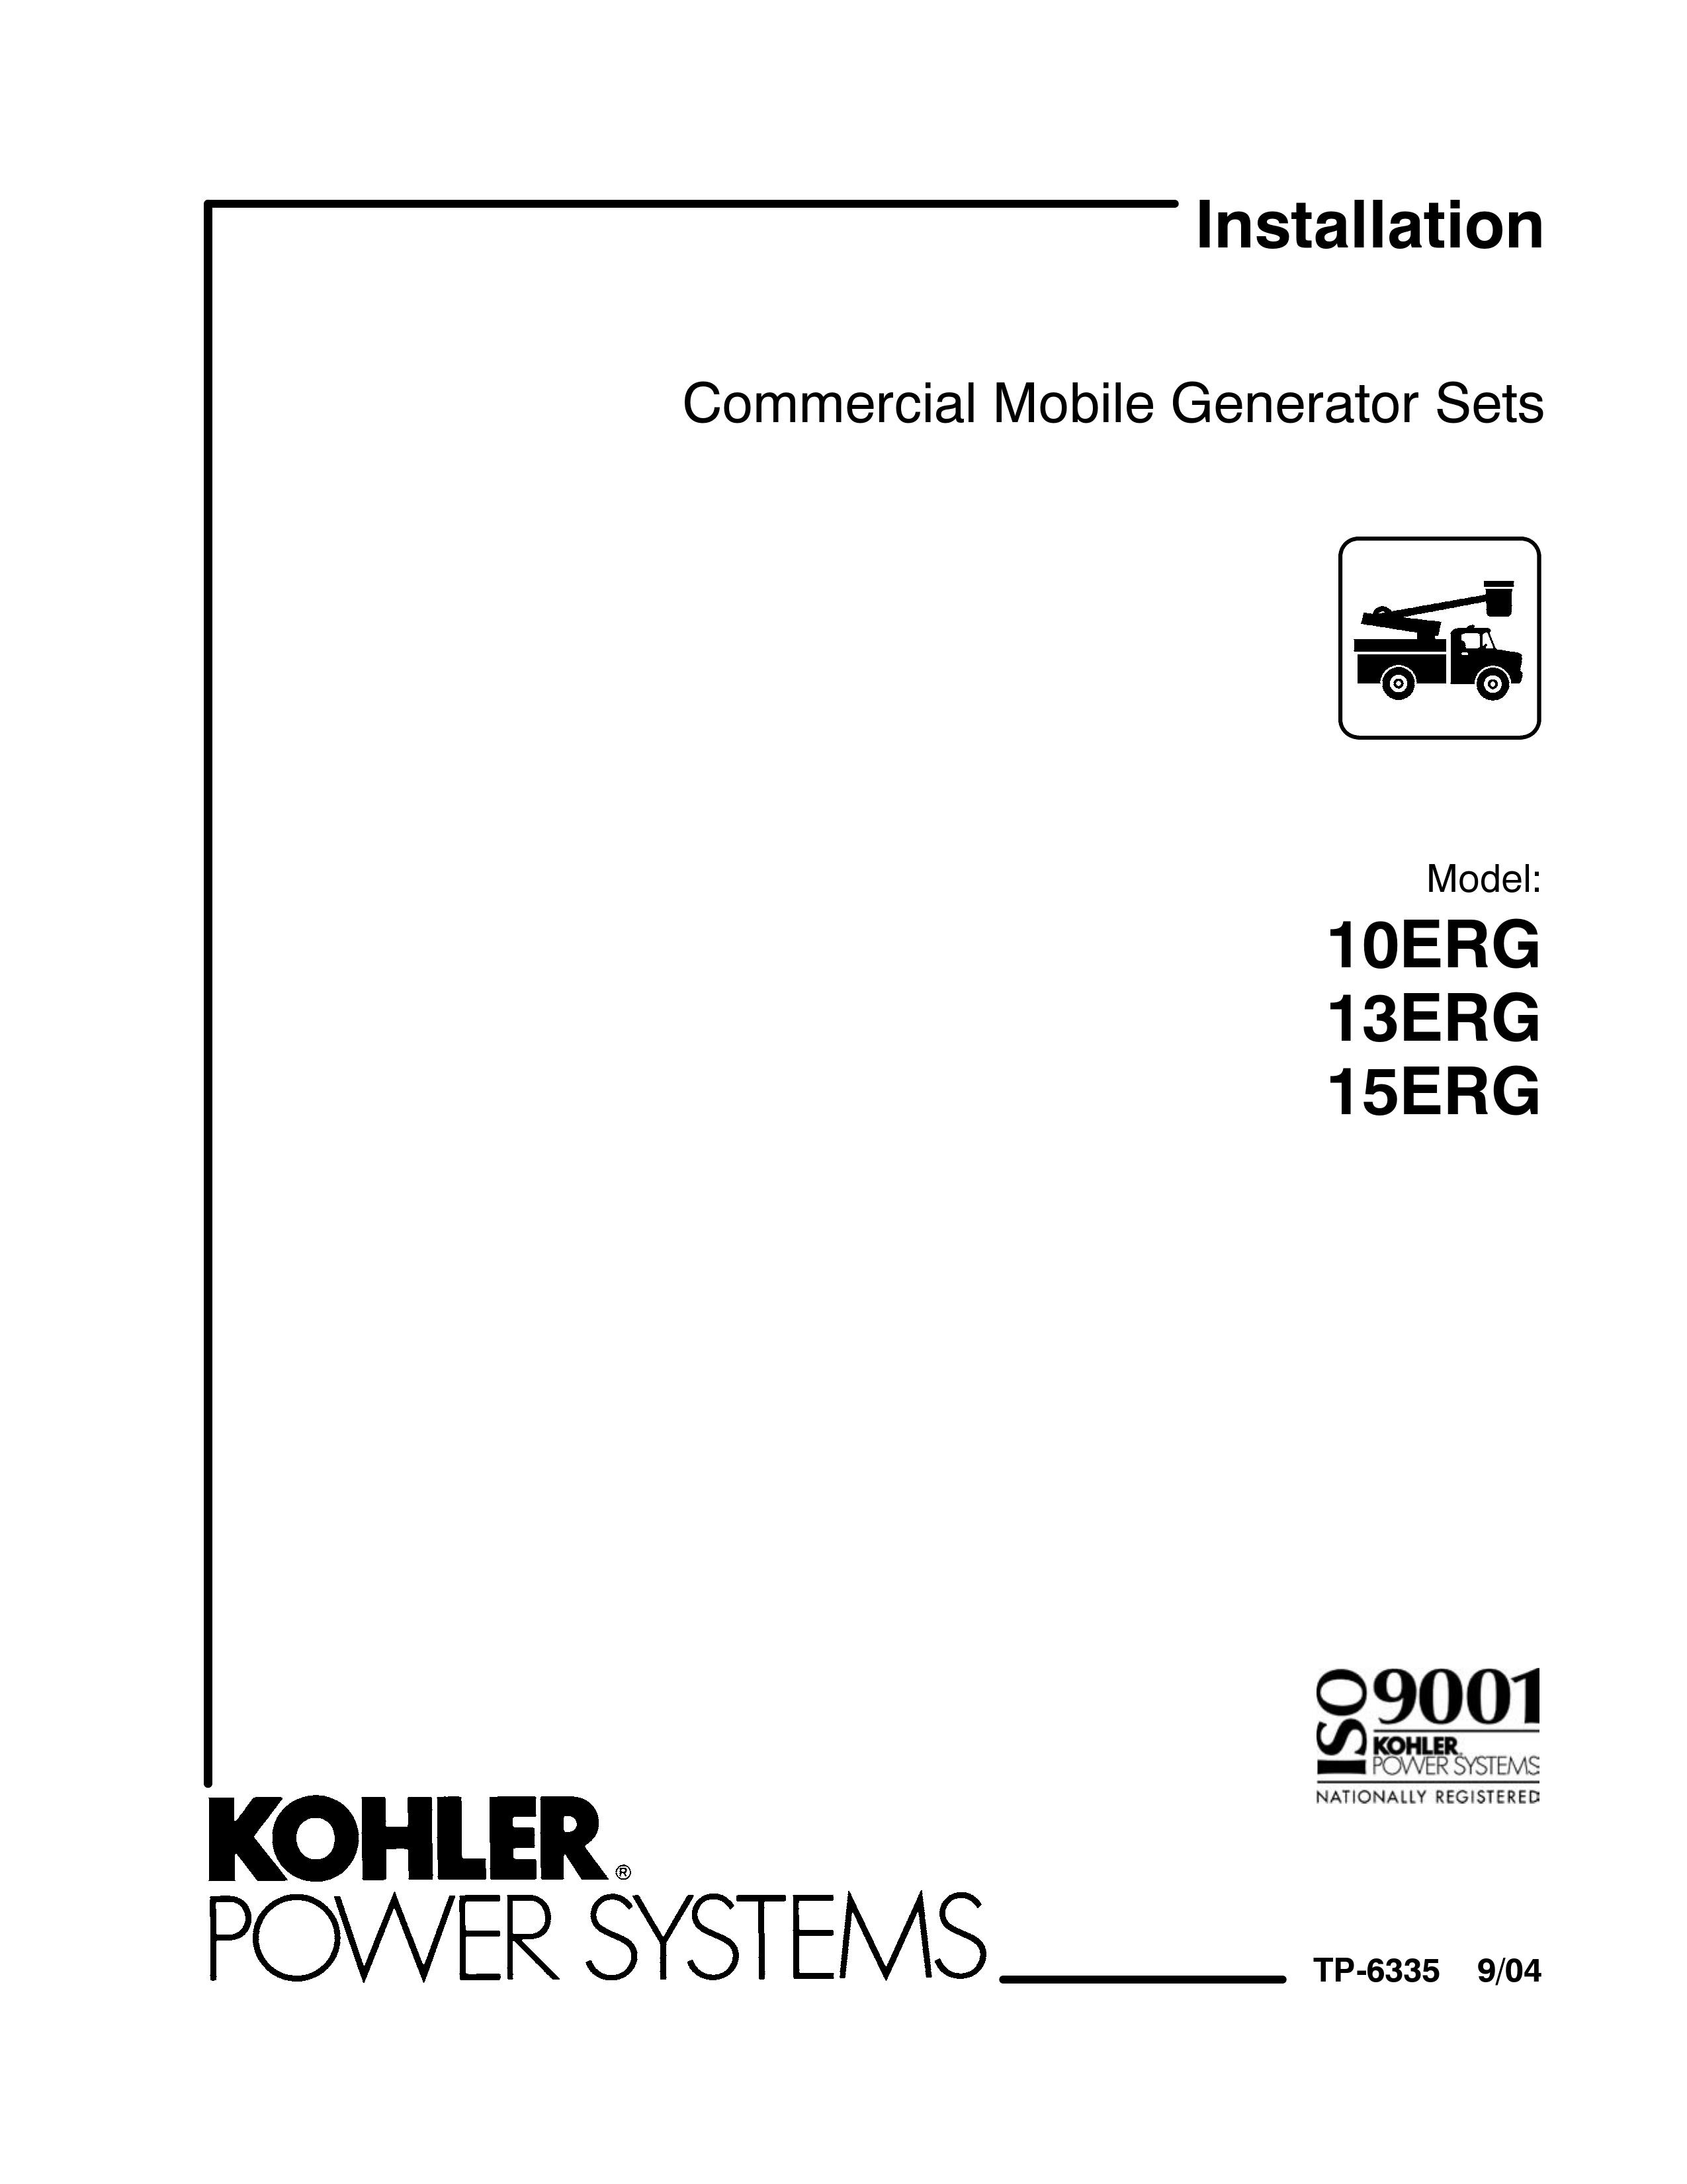 Kohler 13ERG Portable Generator User Manual